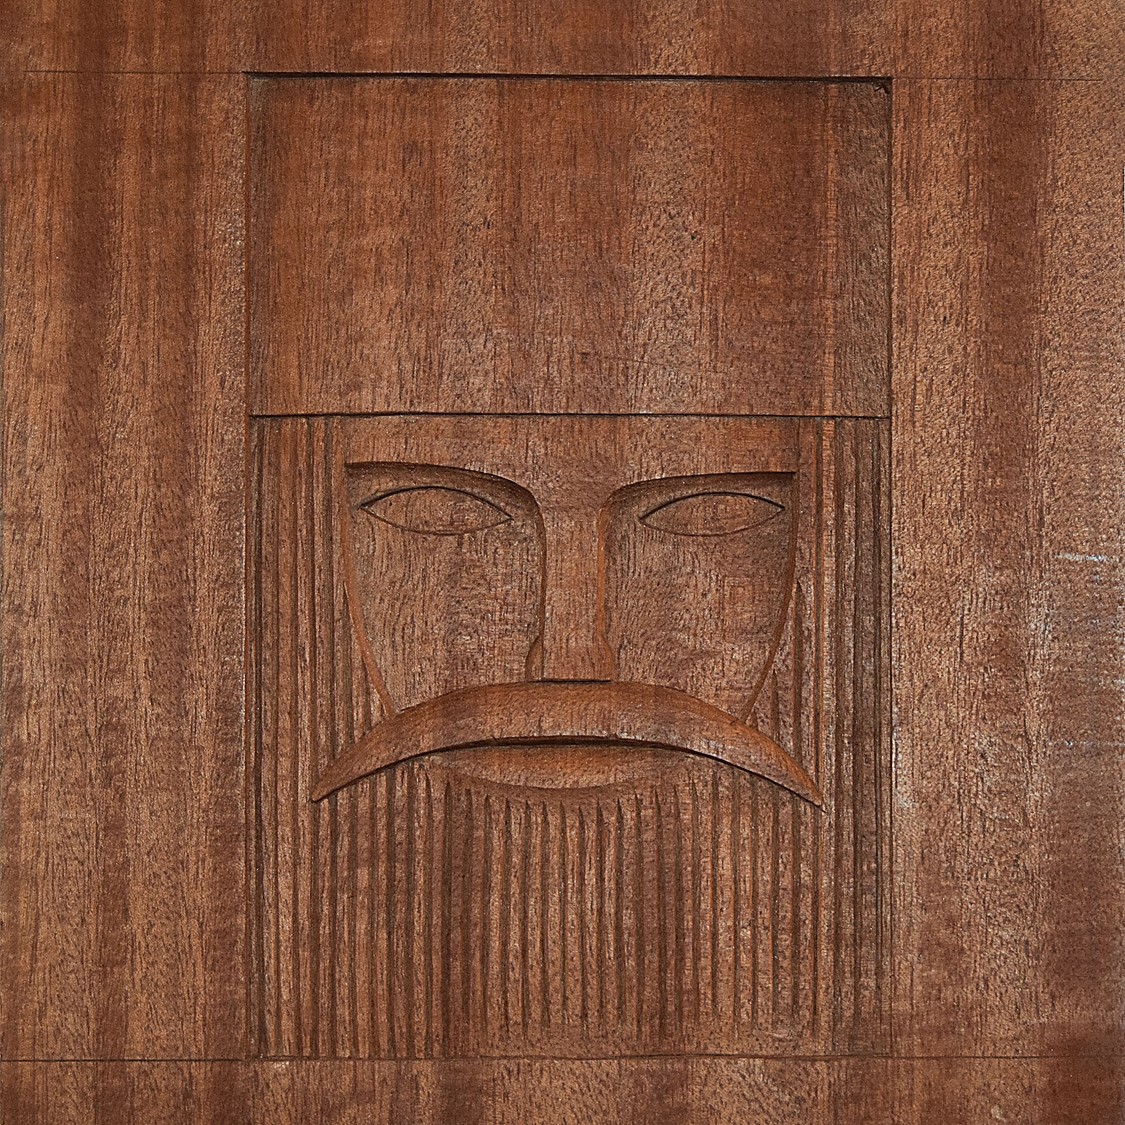 Rzeźba w drewnie przedstawiająca głowę króla